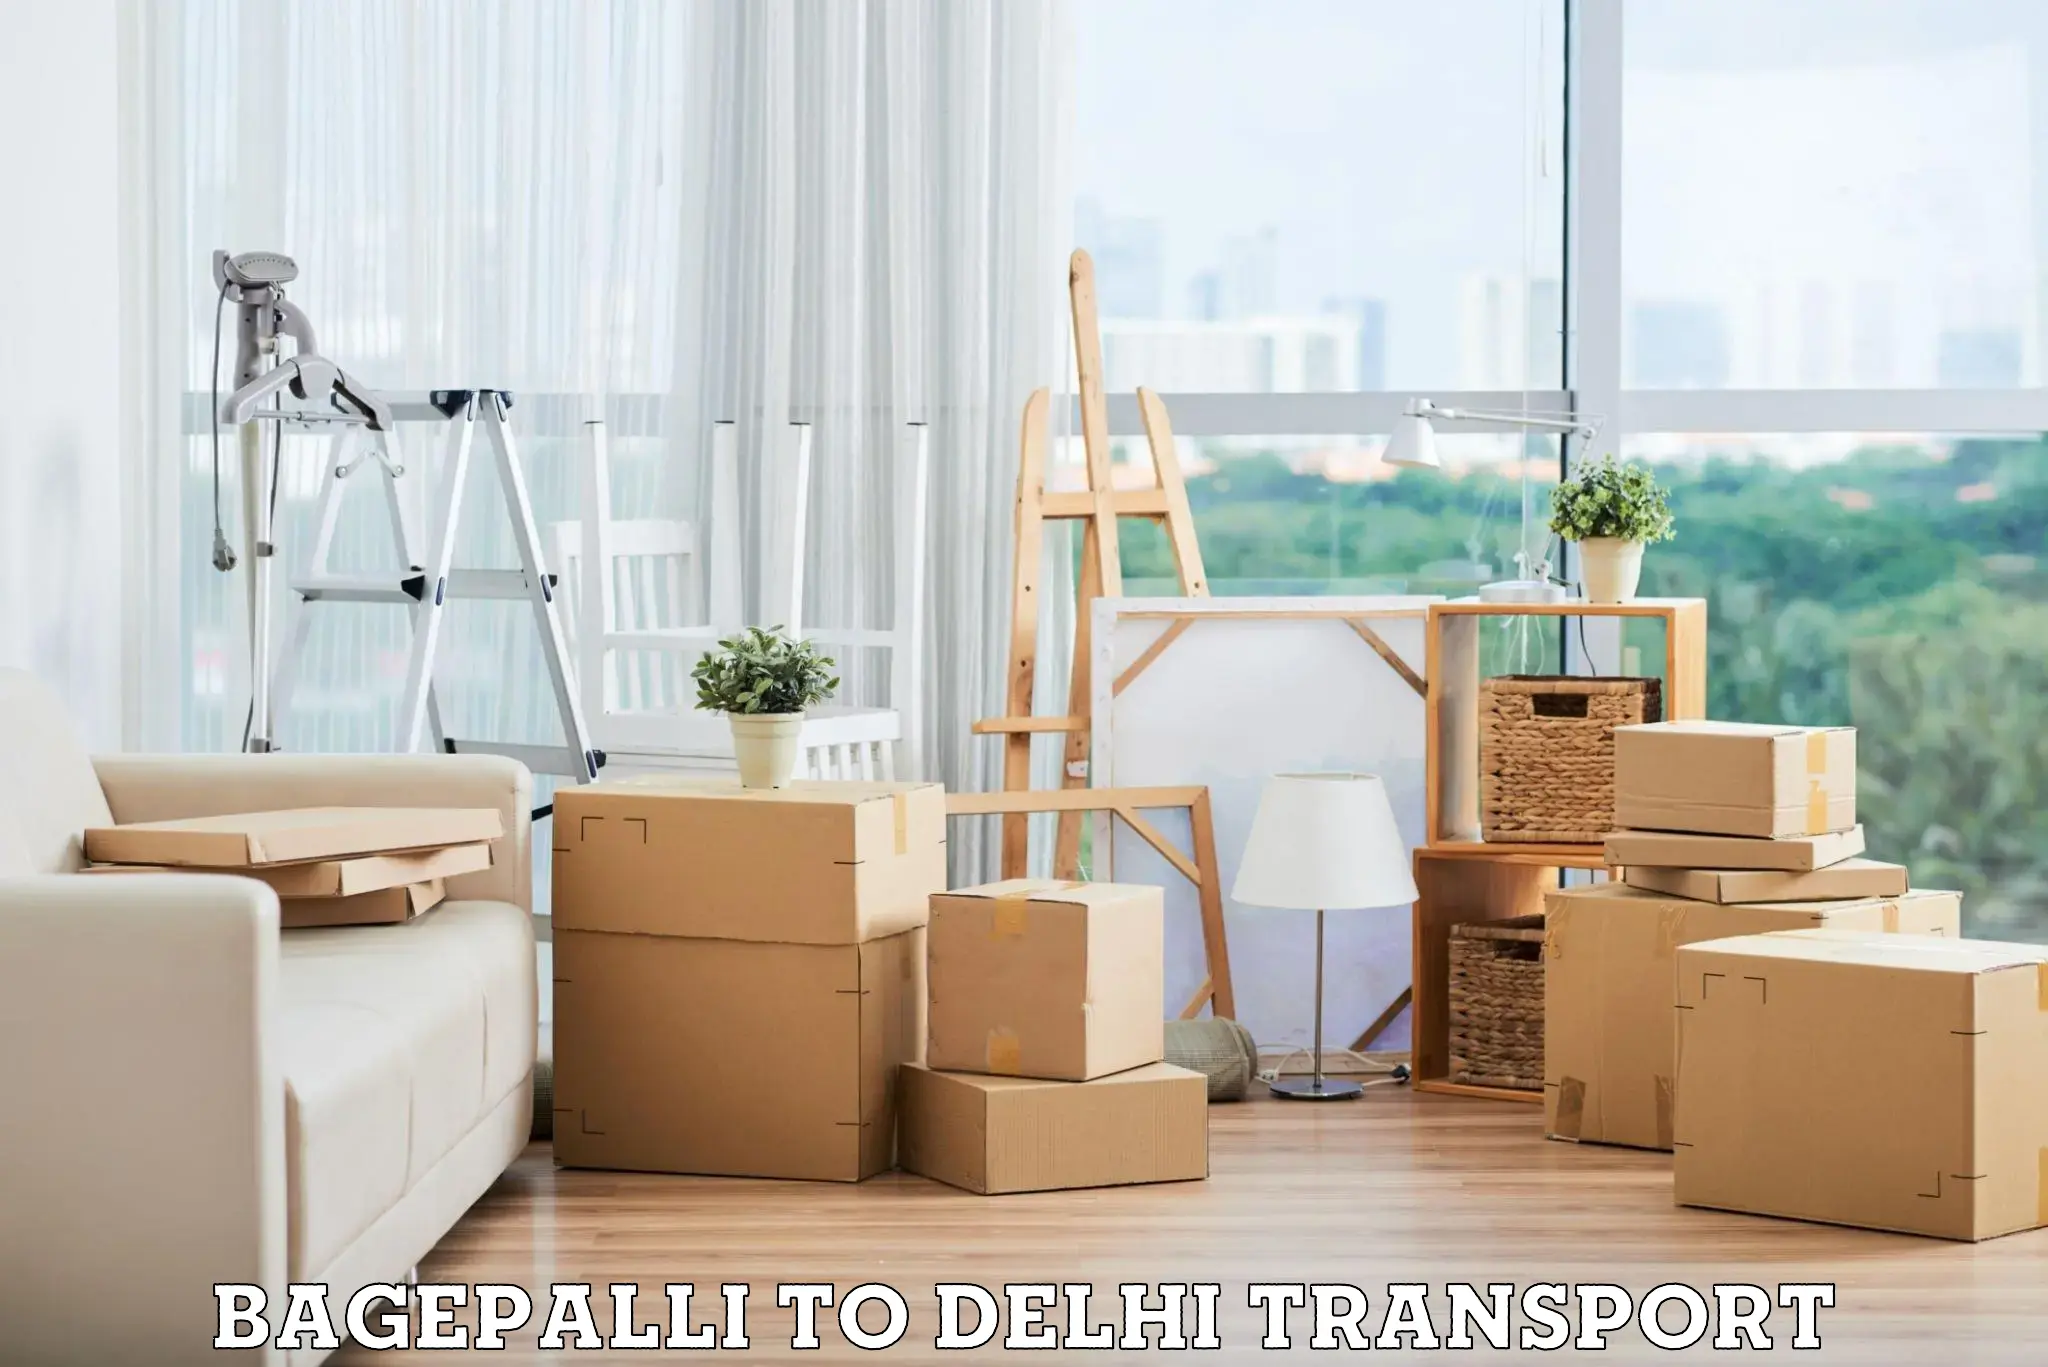 Online transport booking Bagepalli to Delhi